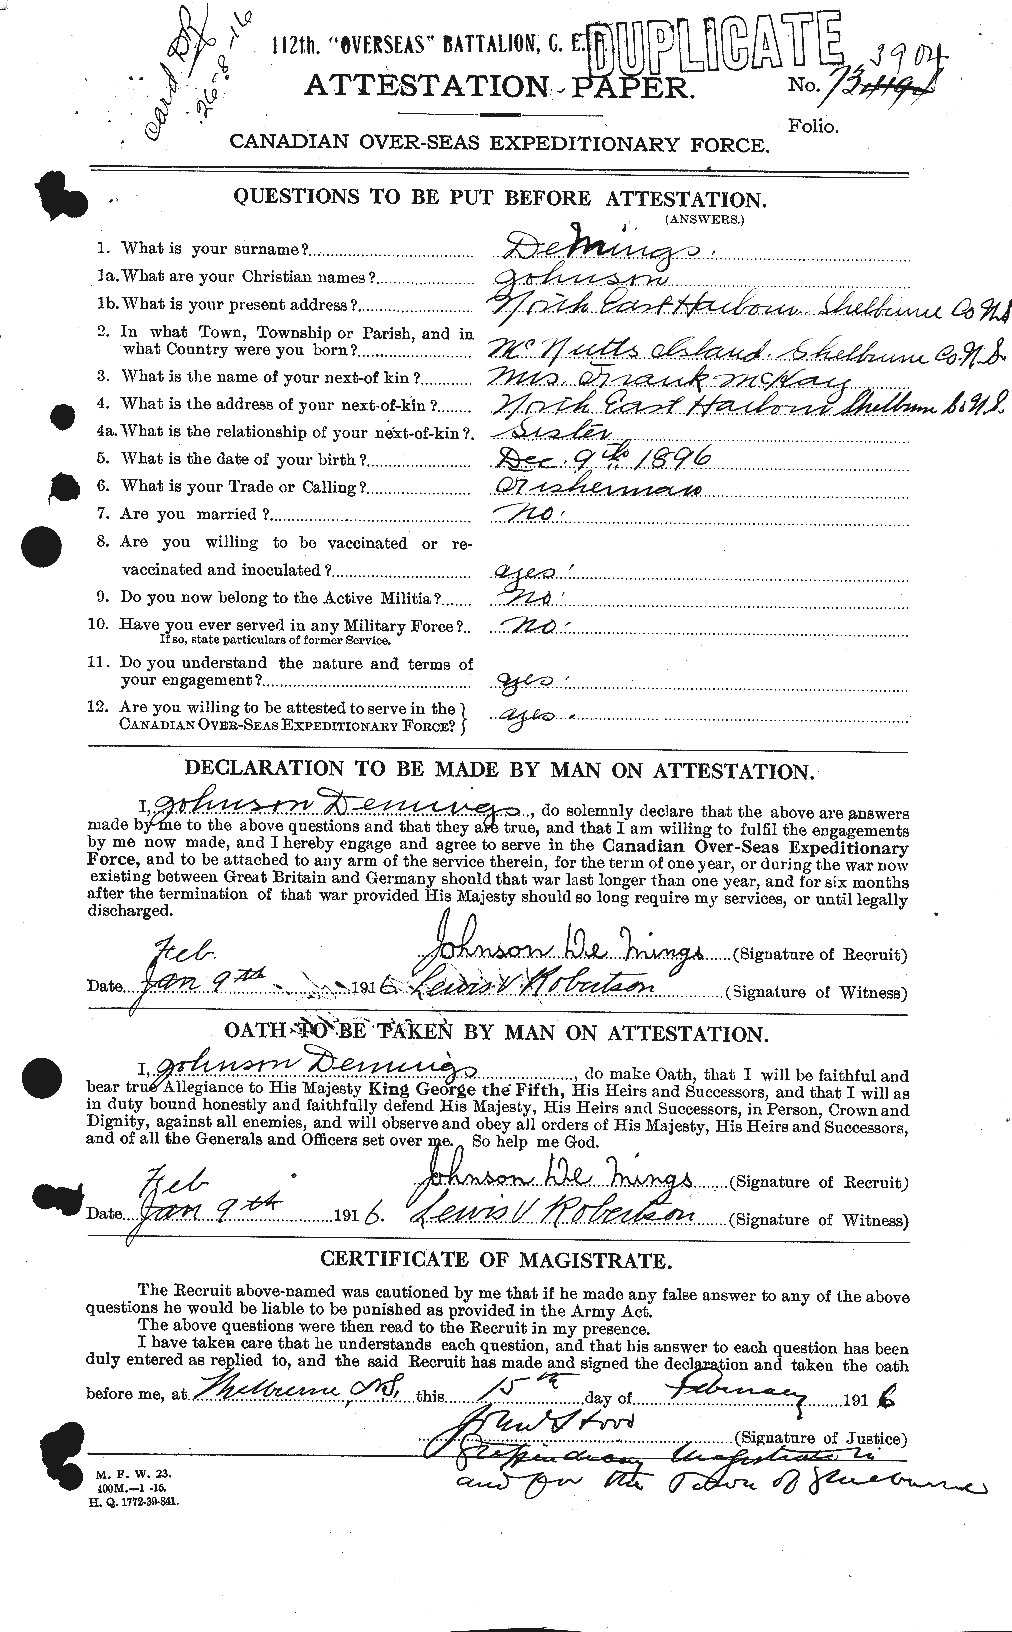 Dossiers du Personnel de la Première Guerre mondiale - CEC 286772a